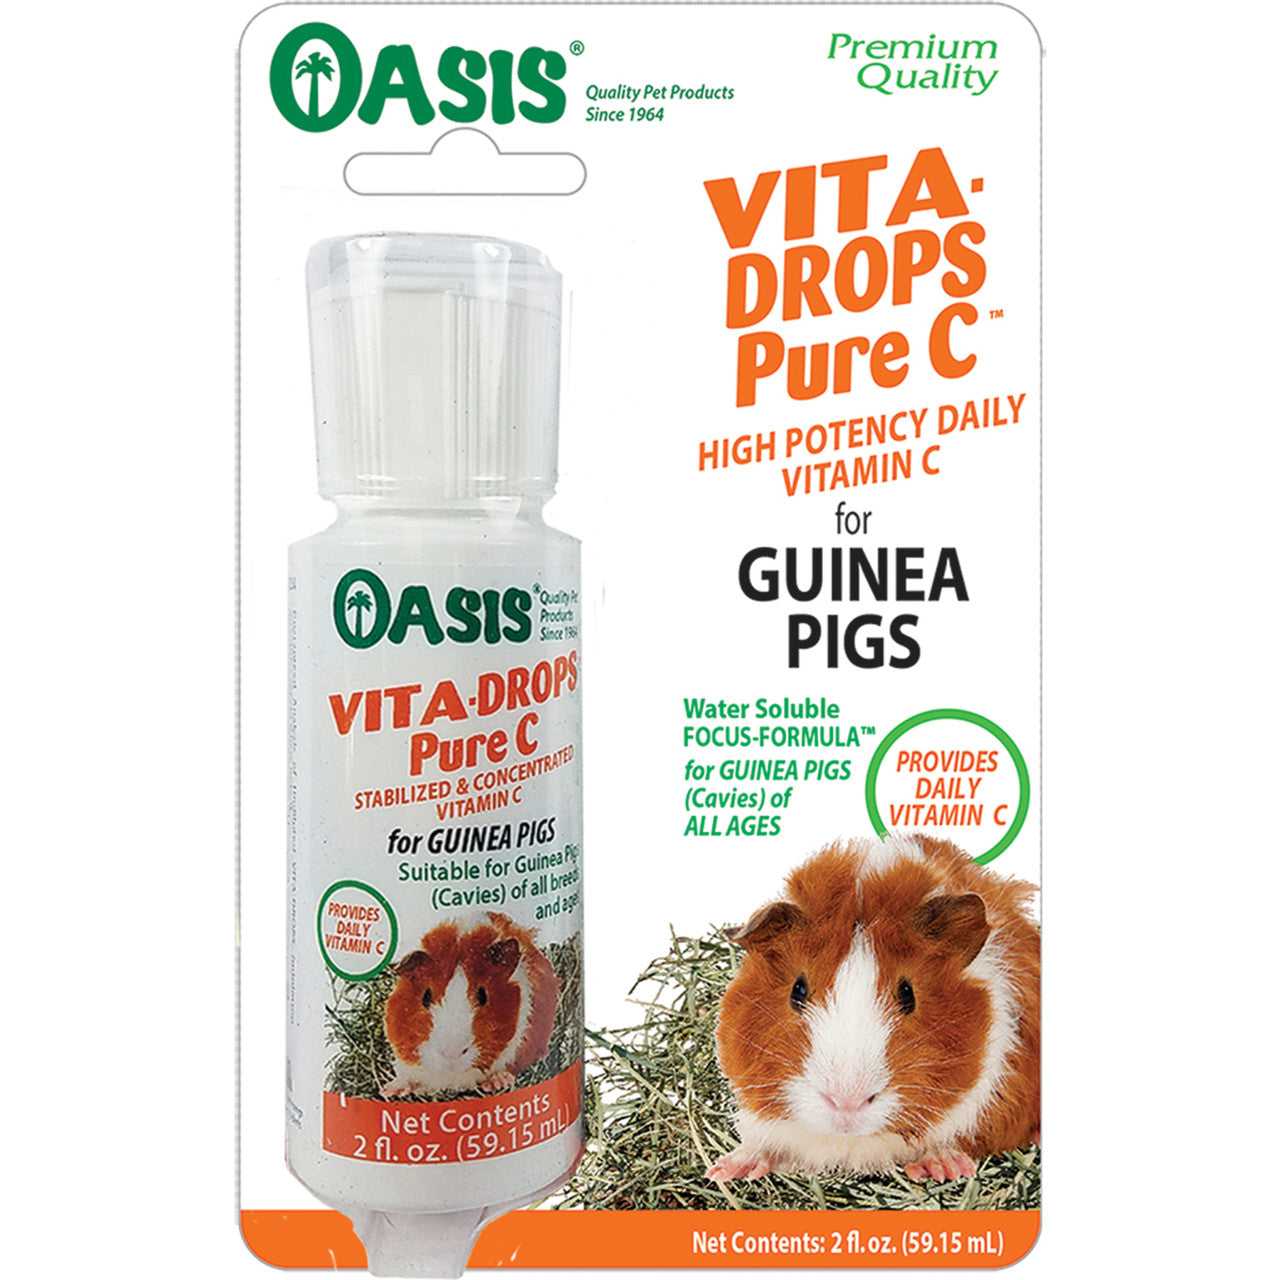 Oasis Vita-Drops Pure Vitamin C for Guinea Pigs 2 fl. oz